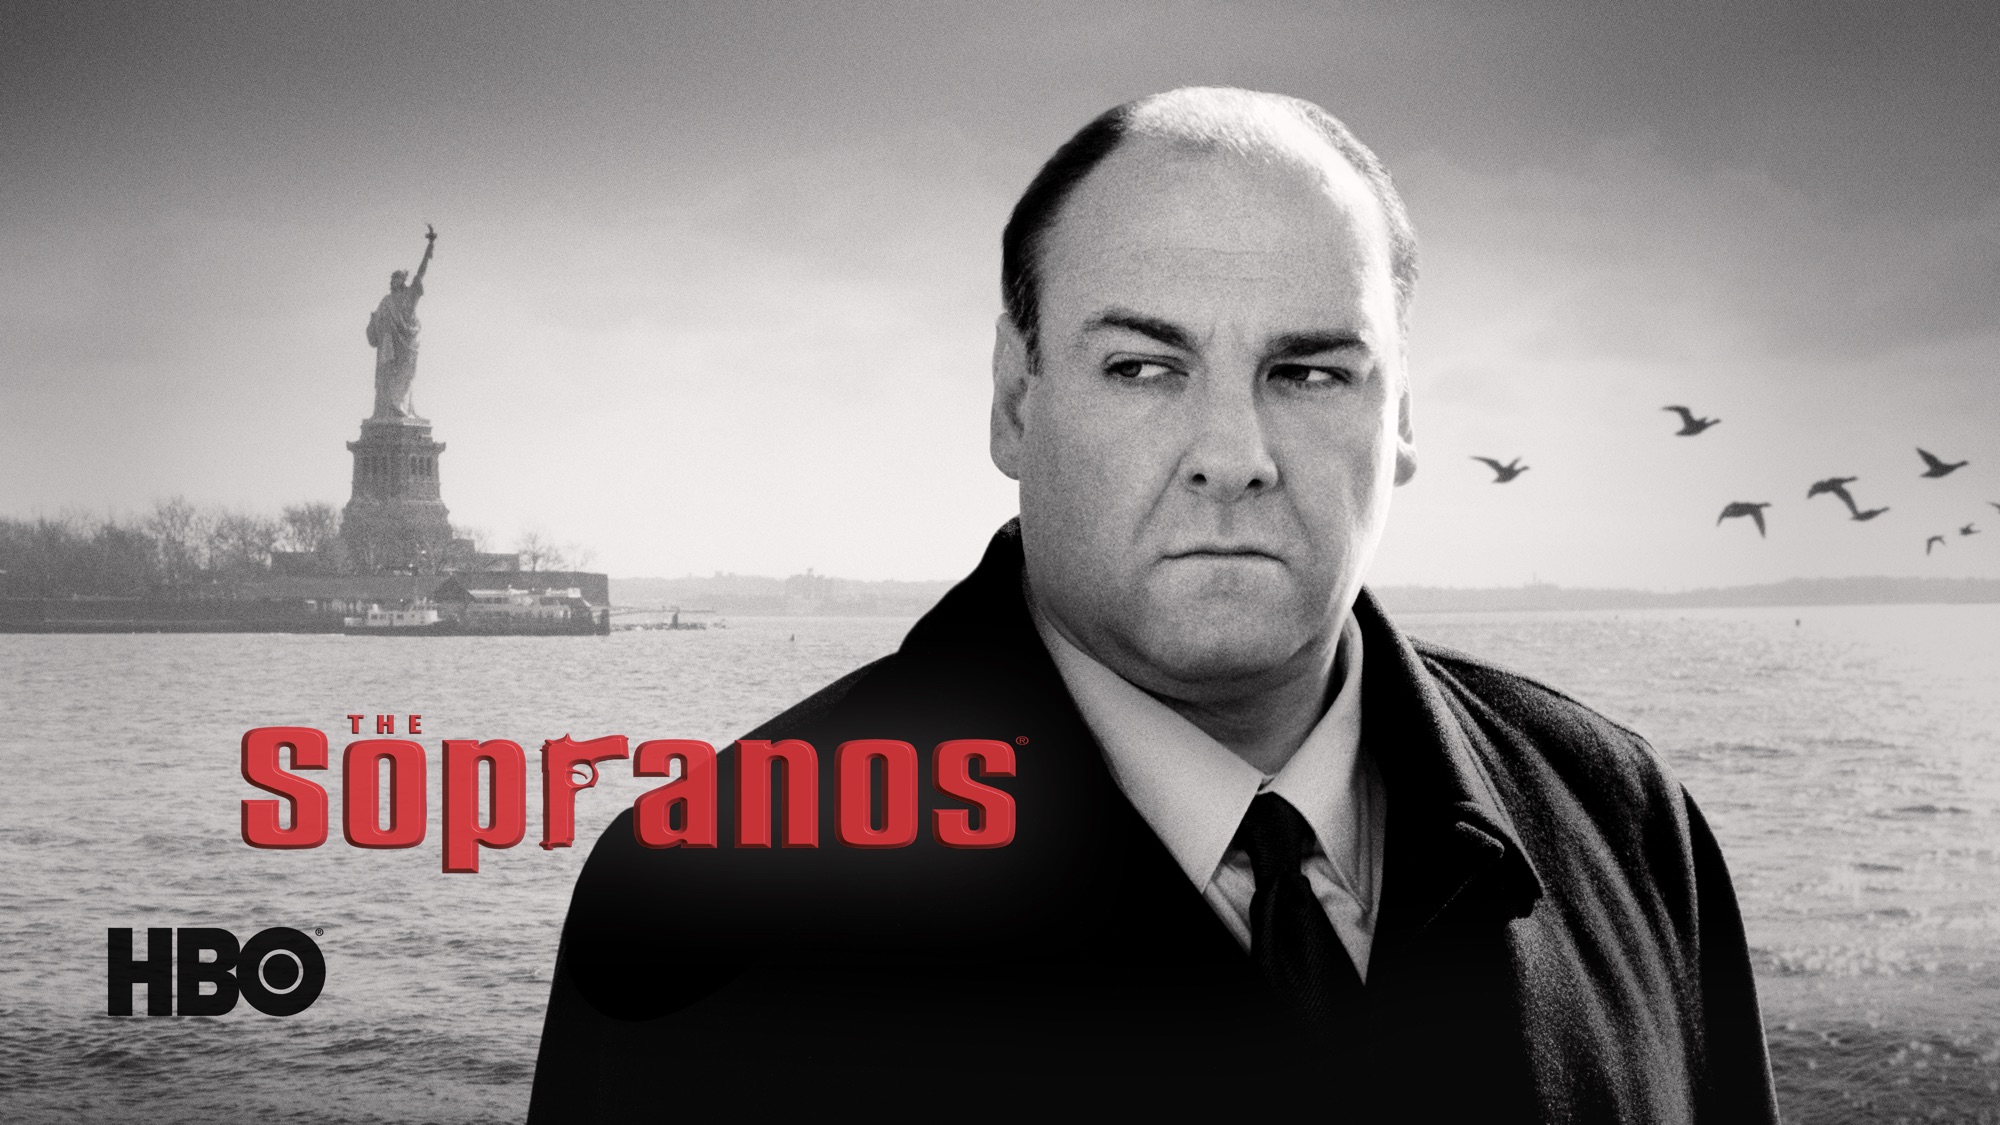 Descarga gratuita de fondo de pantalla para móvil de Series De Televisión, Los Soprano.